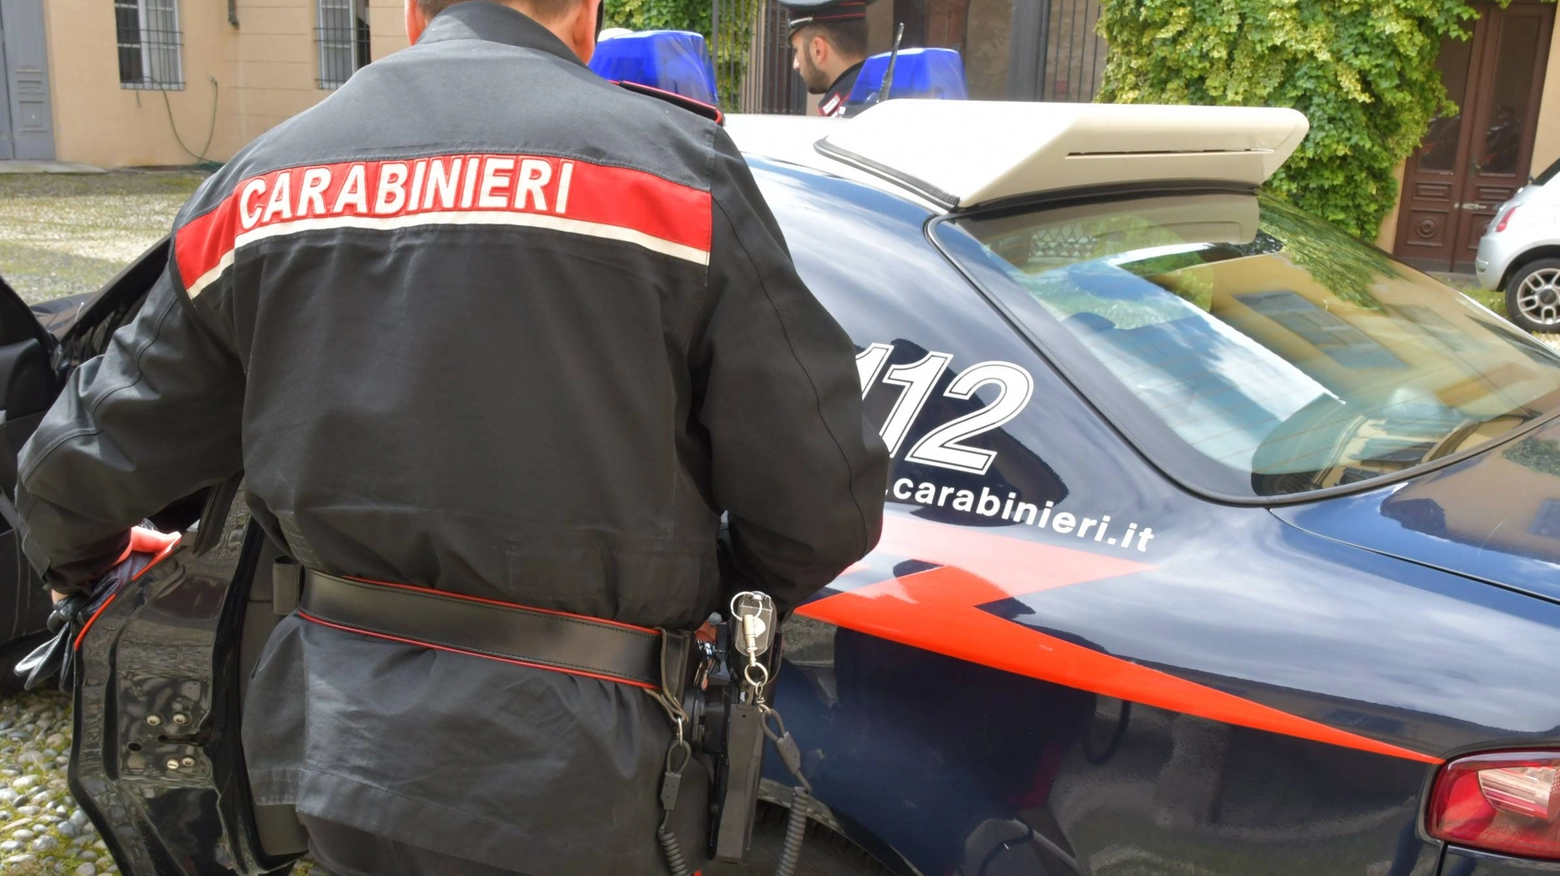 Carabinieri in azione (Fotowebgio)